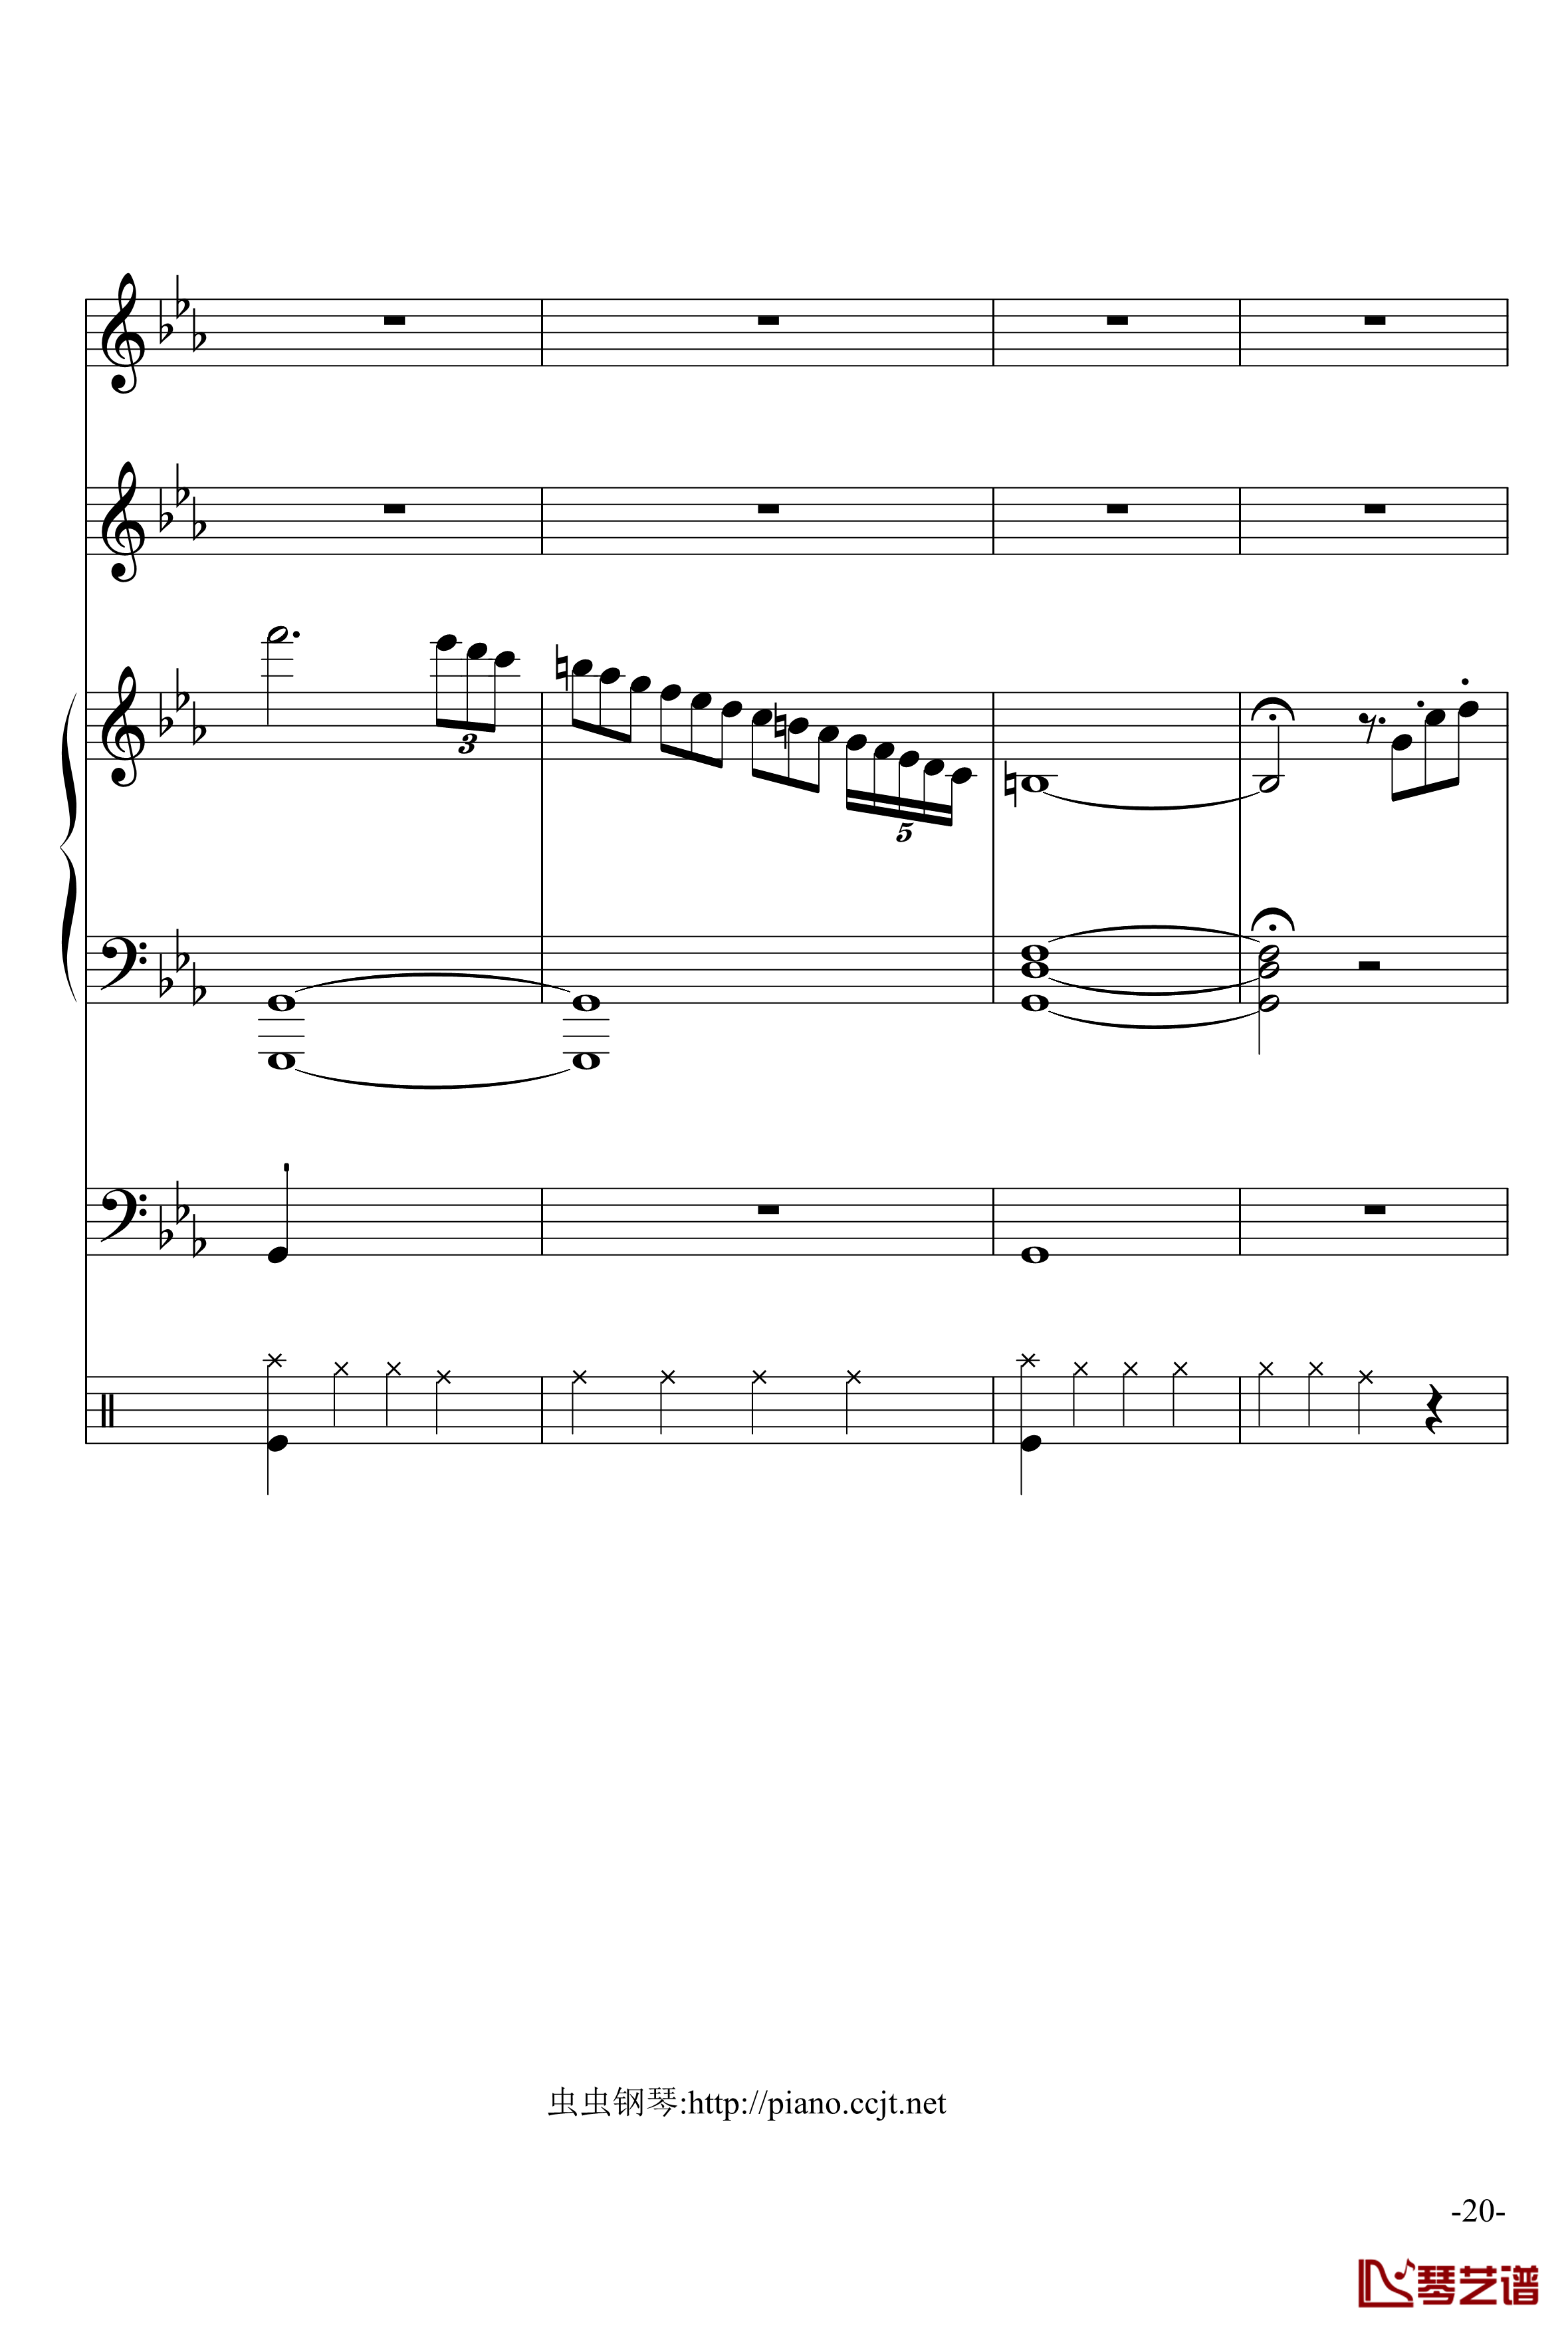 悲怆奏鸣曲钢琴谱-加小乐队-贝多芬-beethoven20